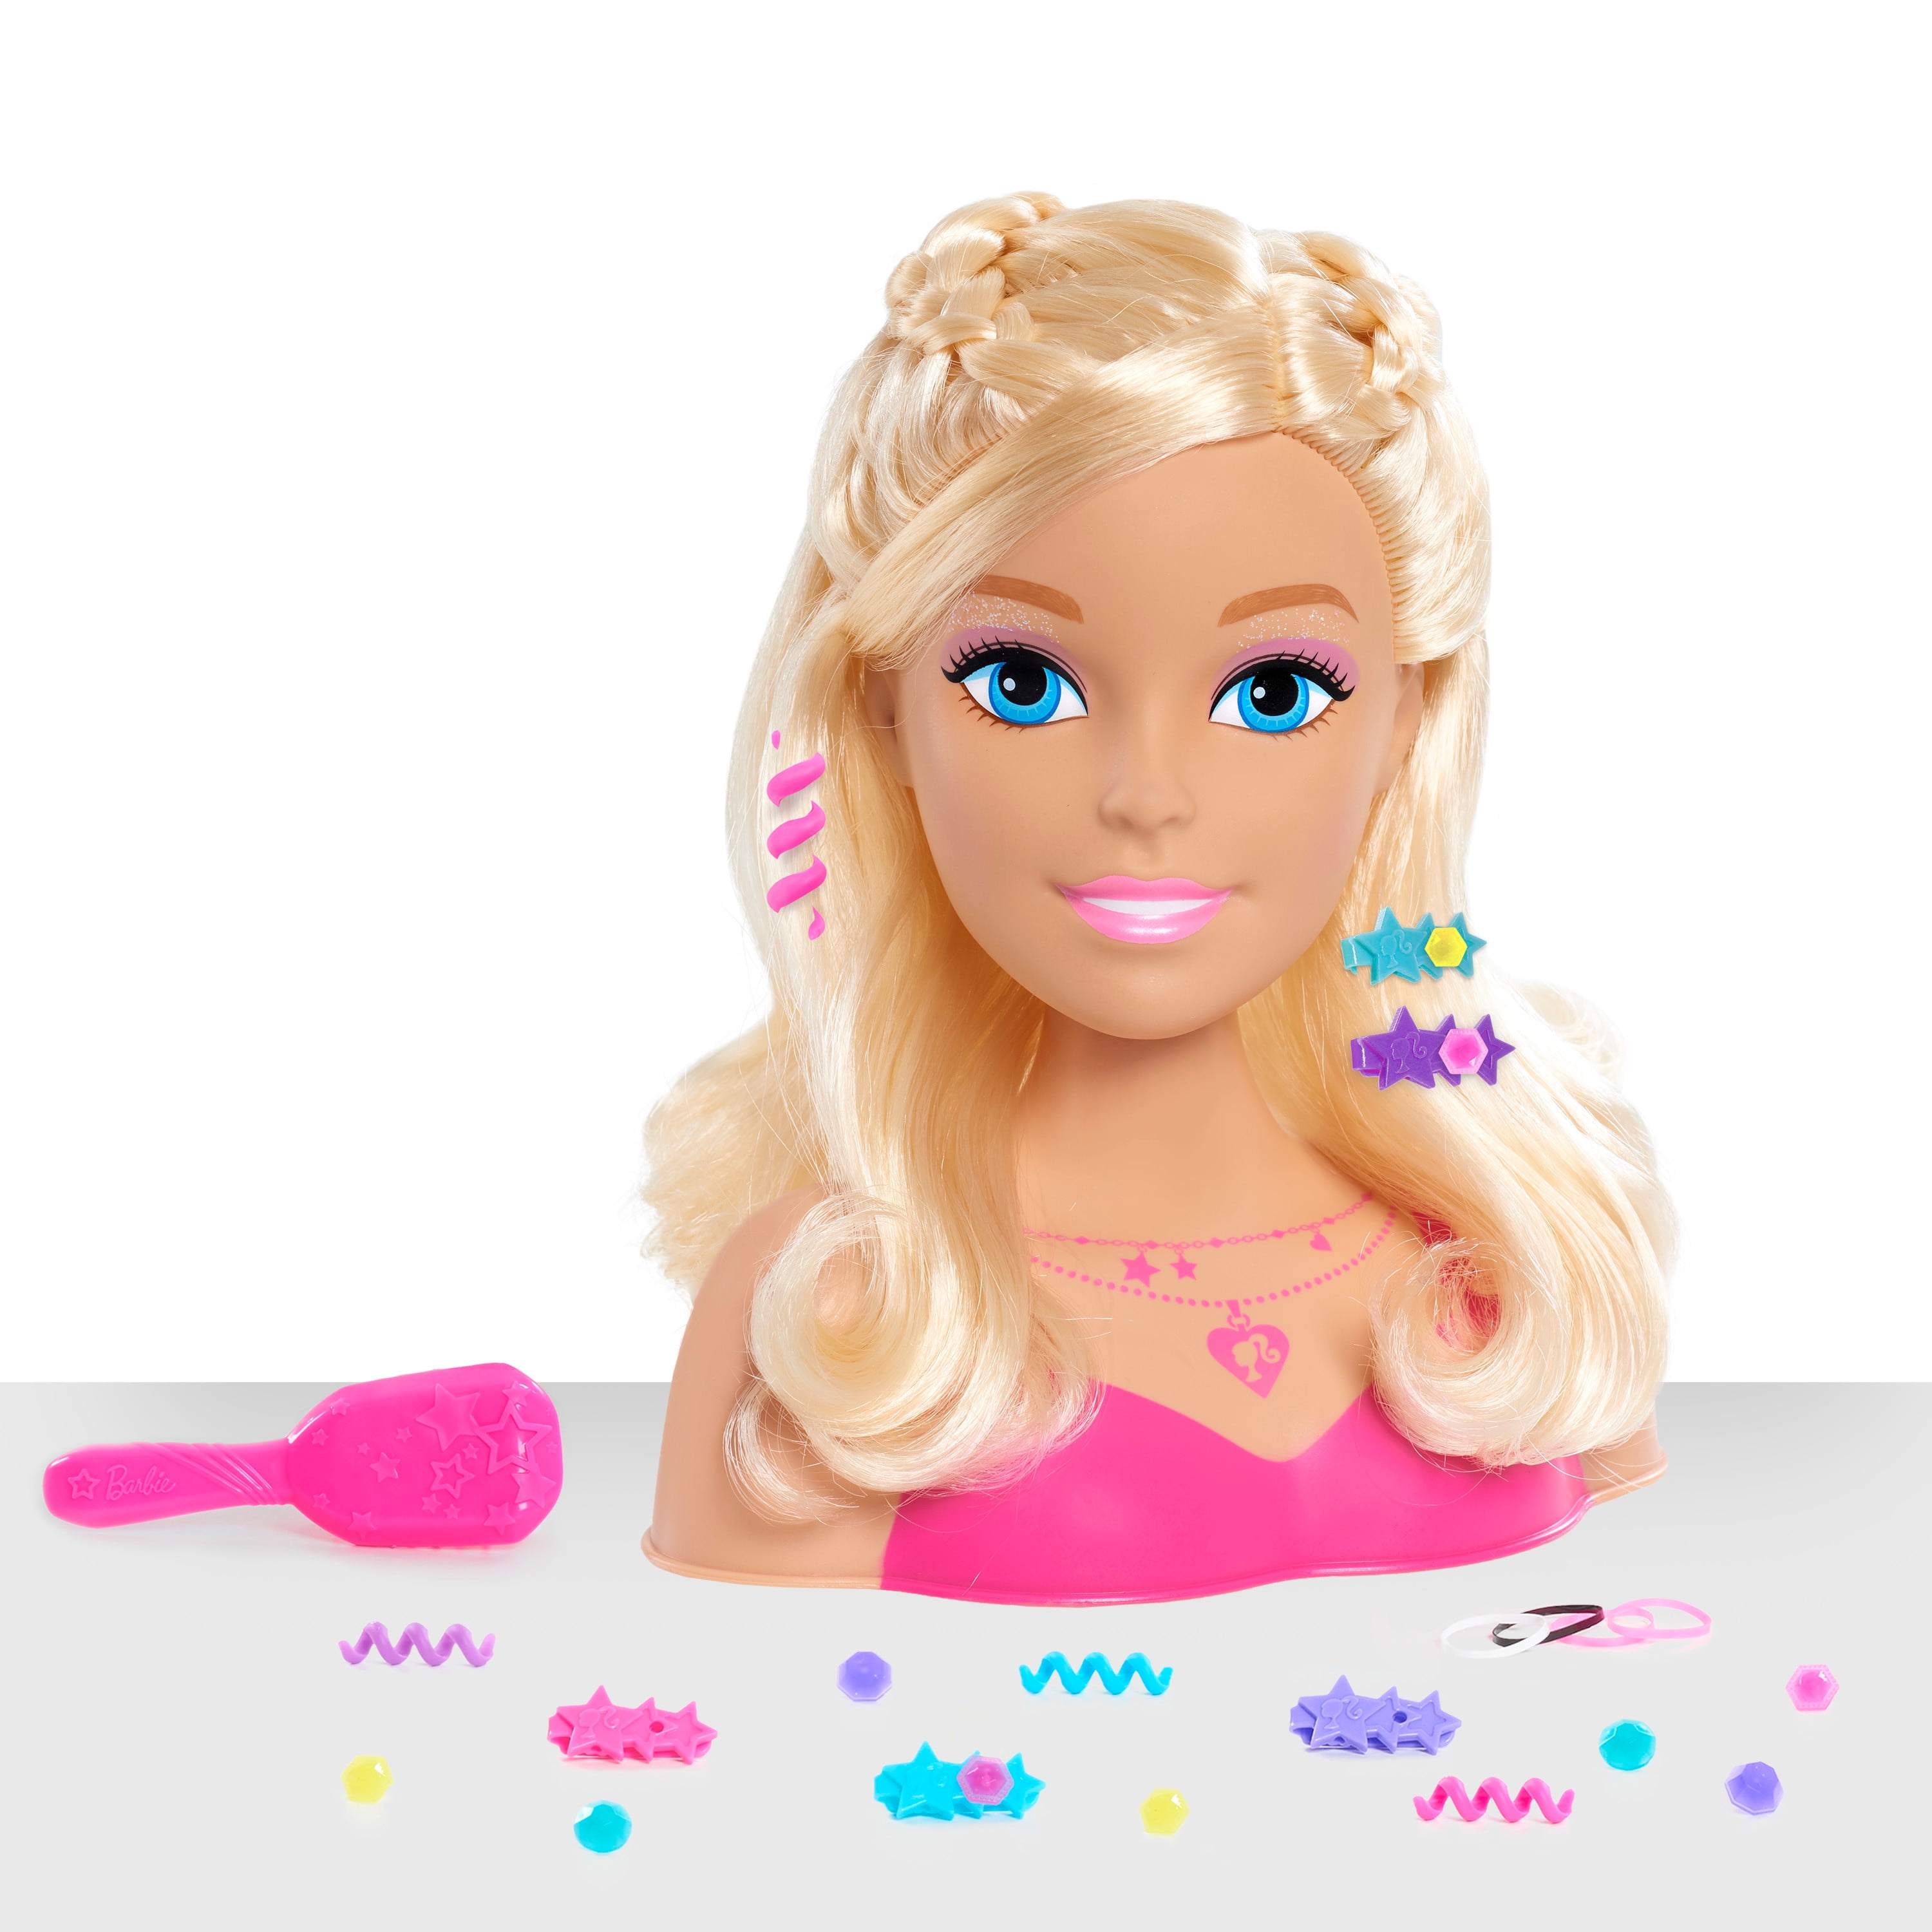 Barbie Fashionistas 8-Inch Styling Head $7.97 (reg $15)